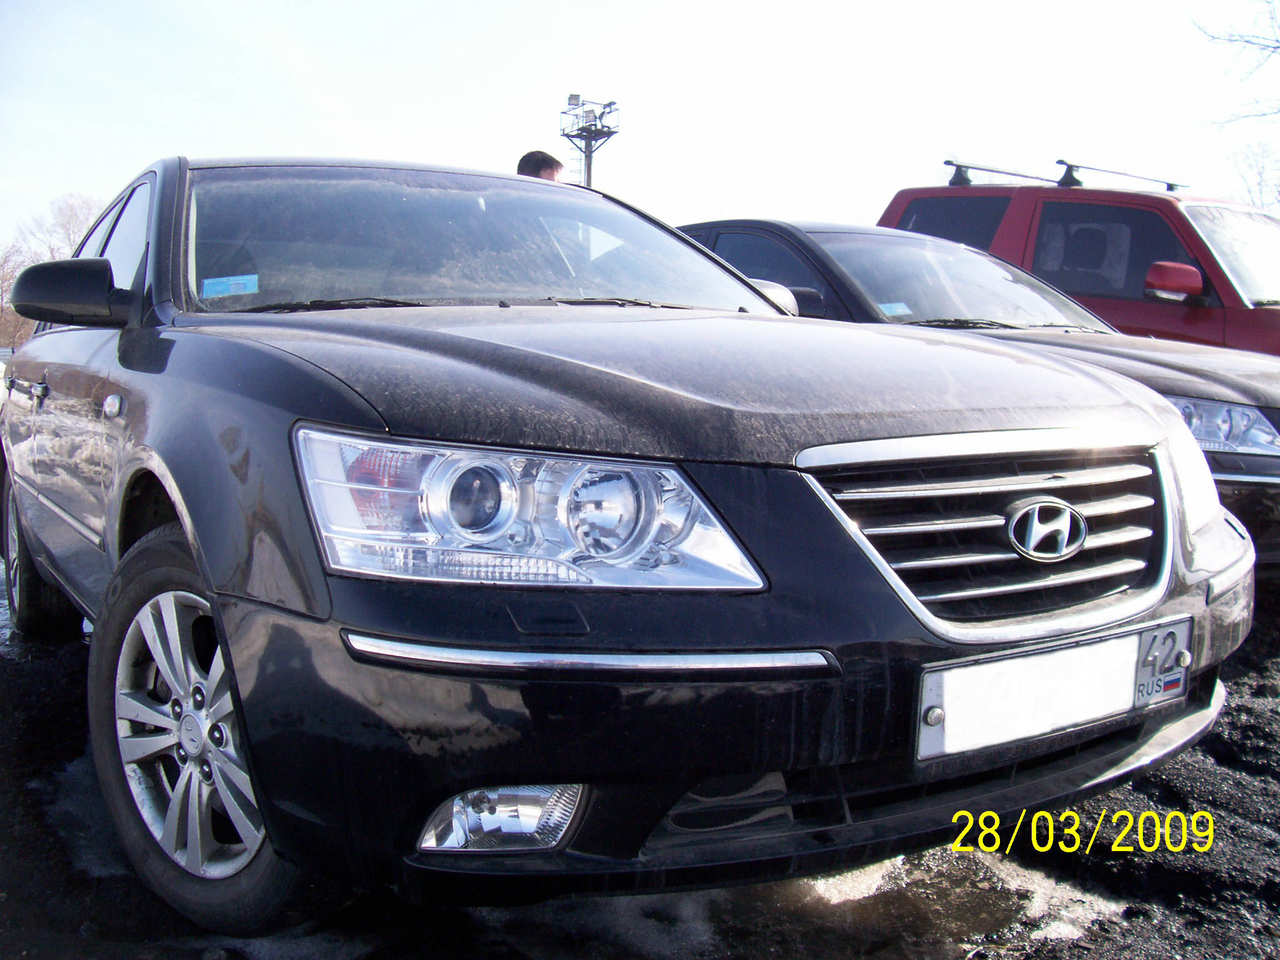 2008 Hyundai NF